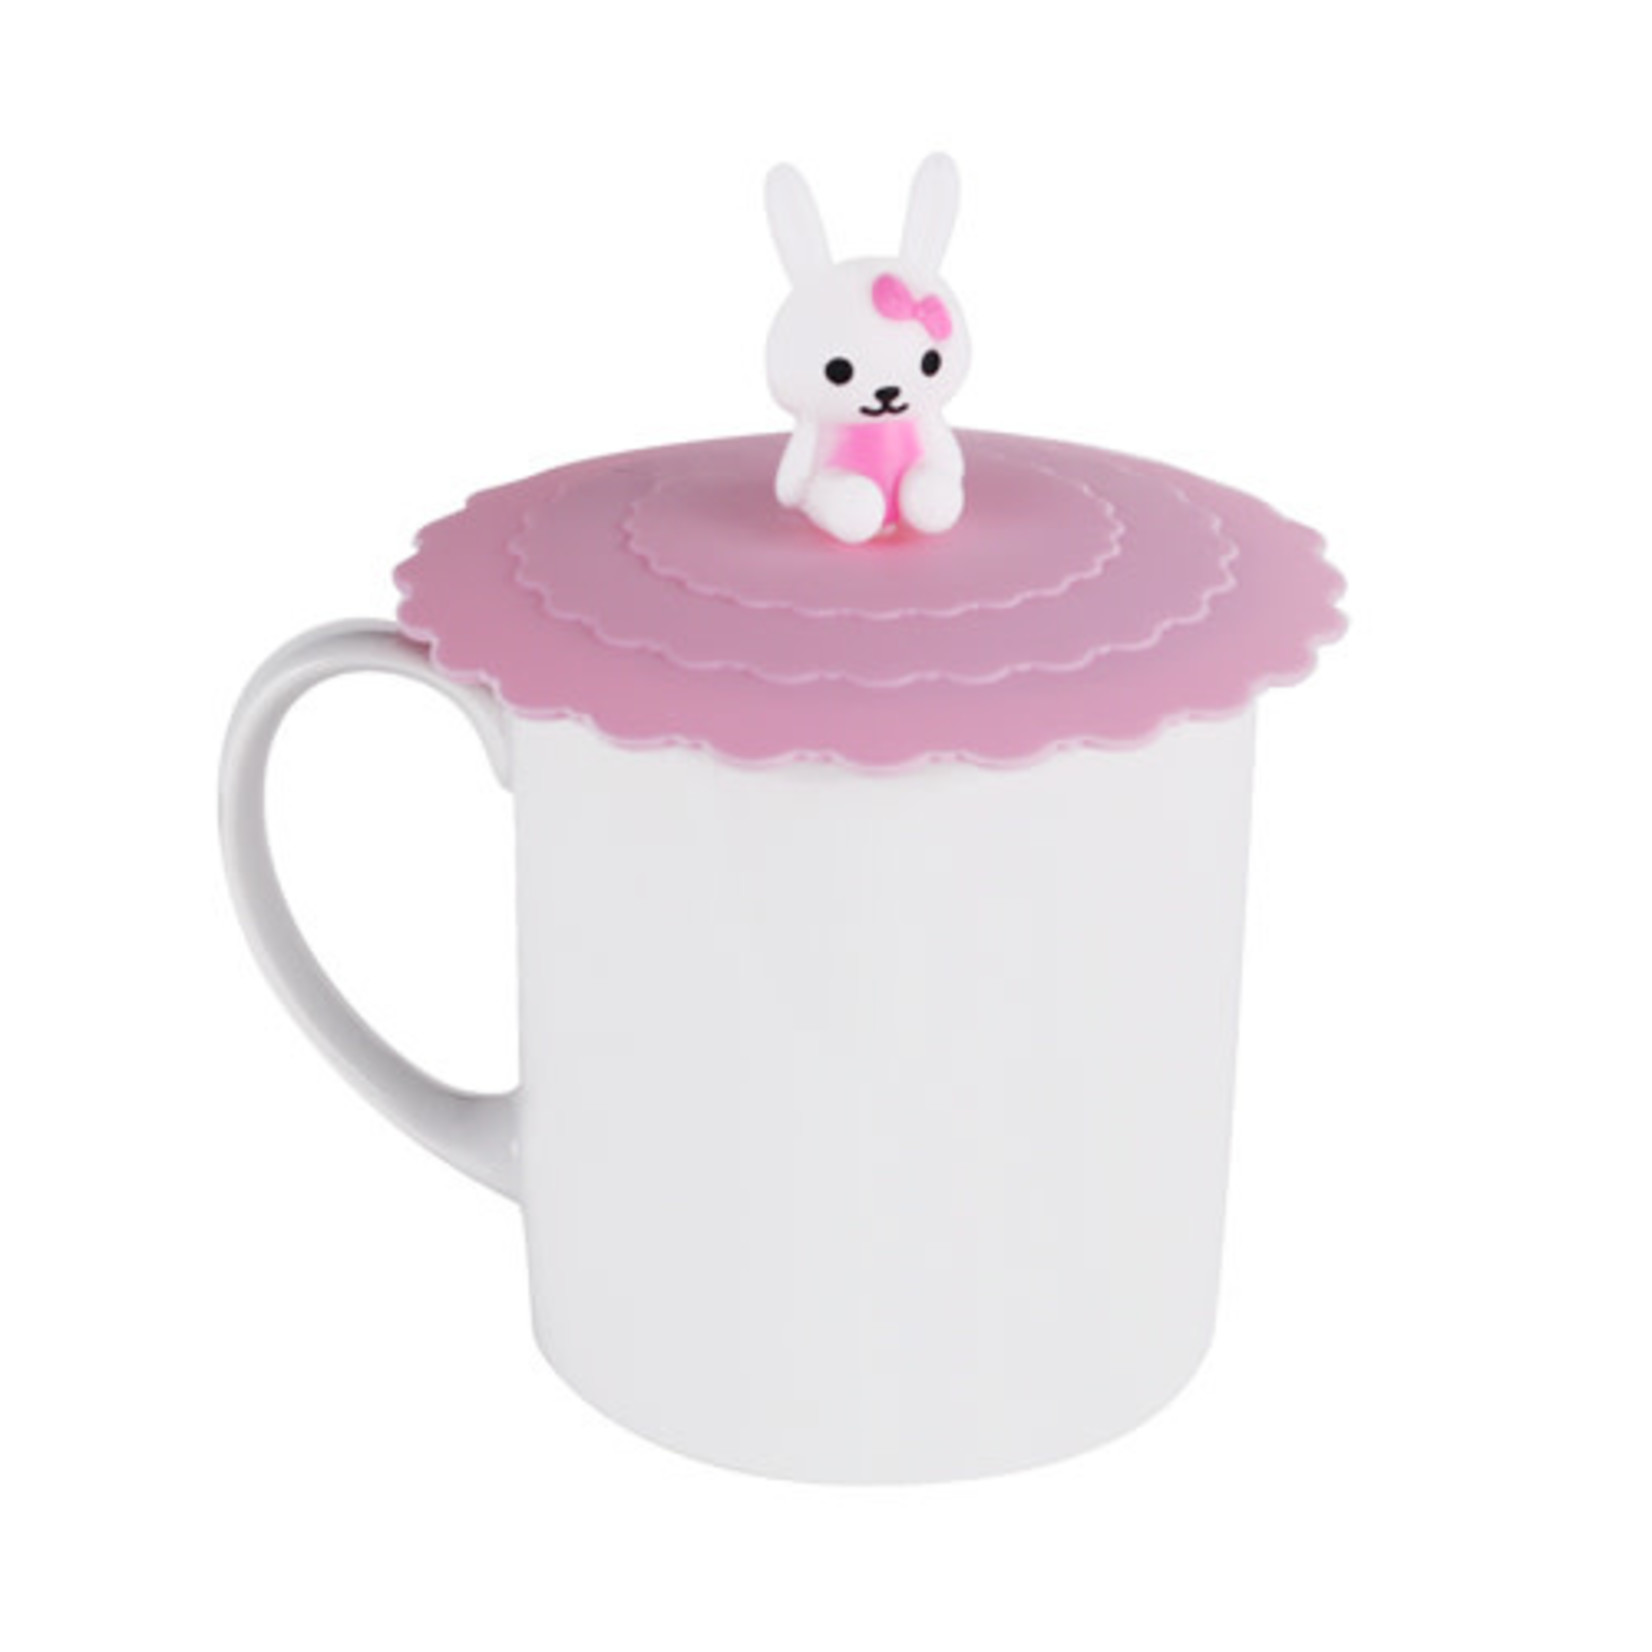 Silicone Mug Lid - Pink Panda